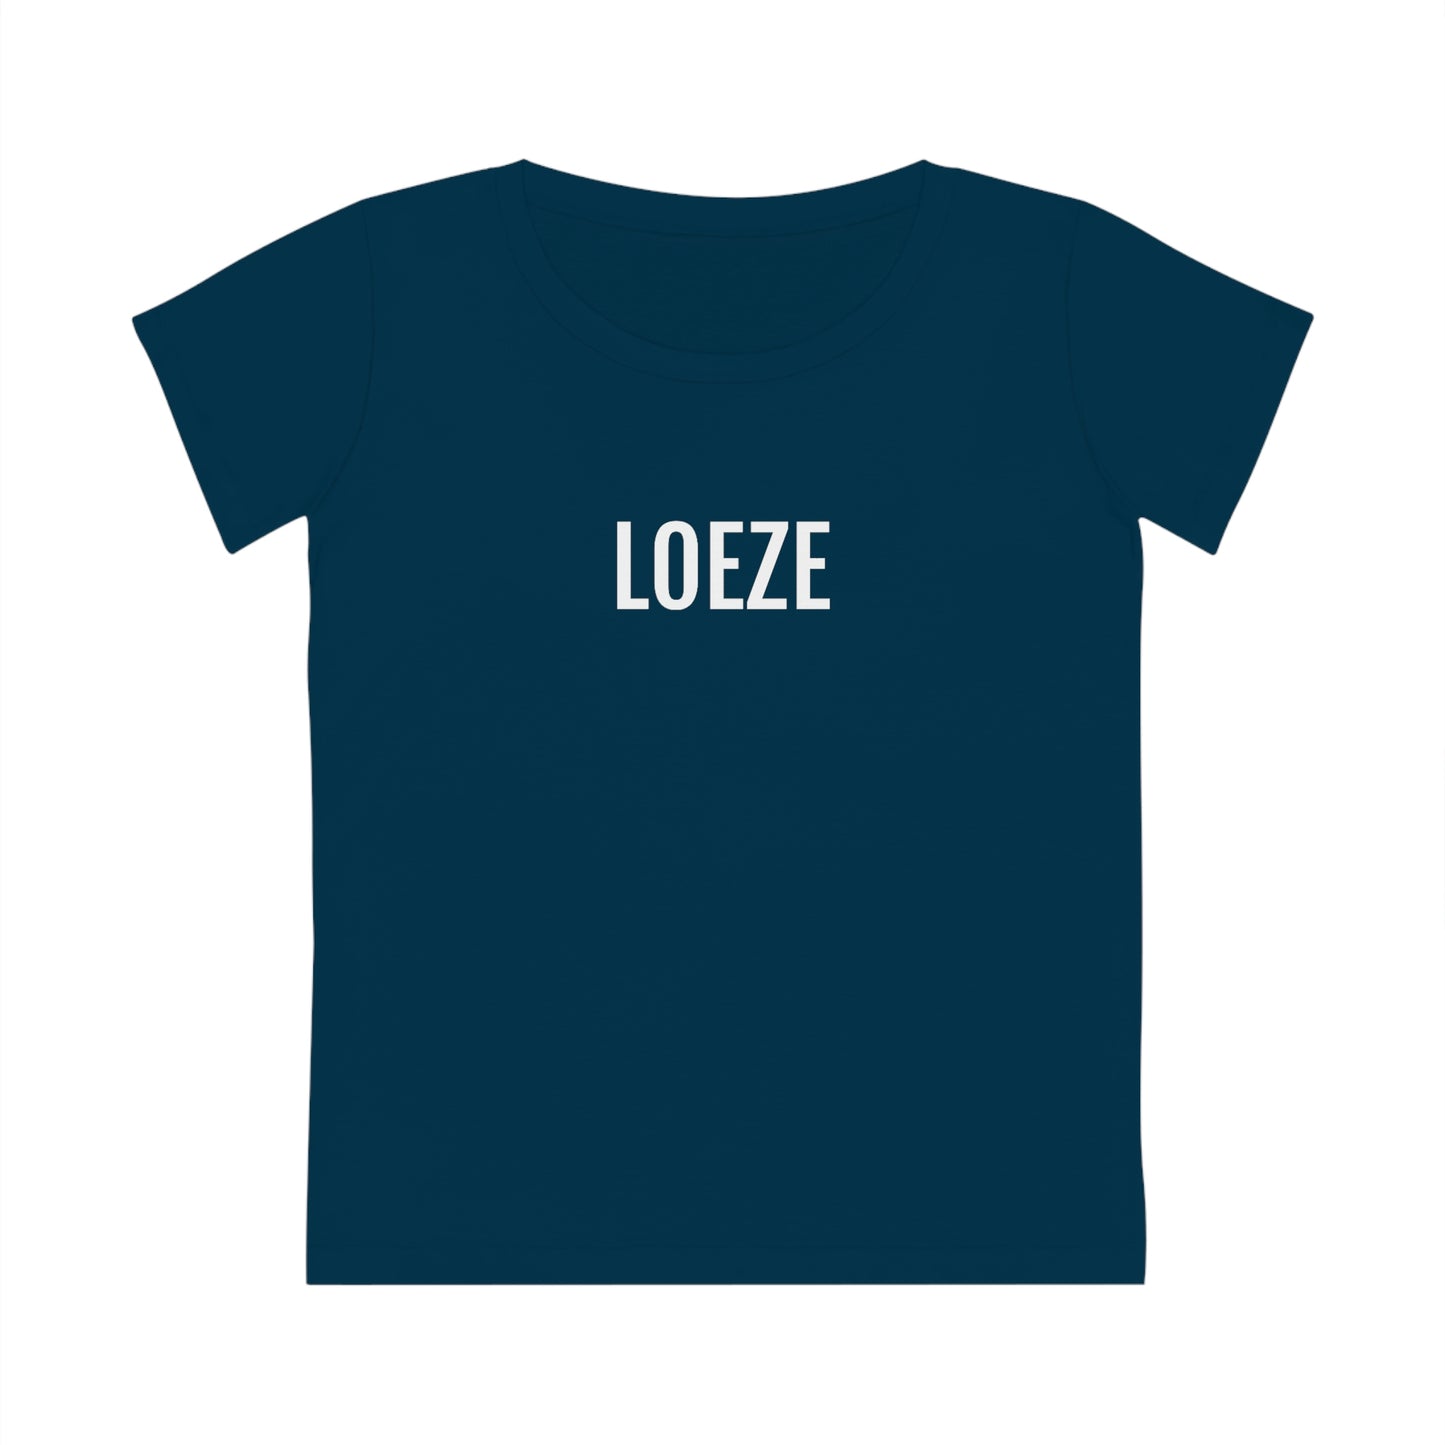 LOEZE | Dames T-Shirt uit Antwerpen - Donkerblauw